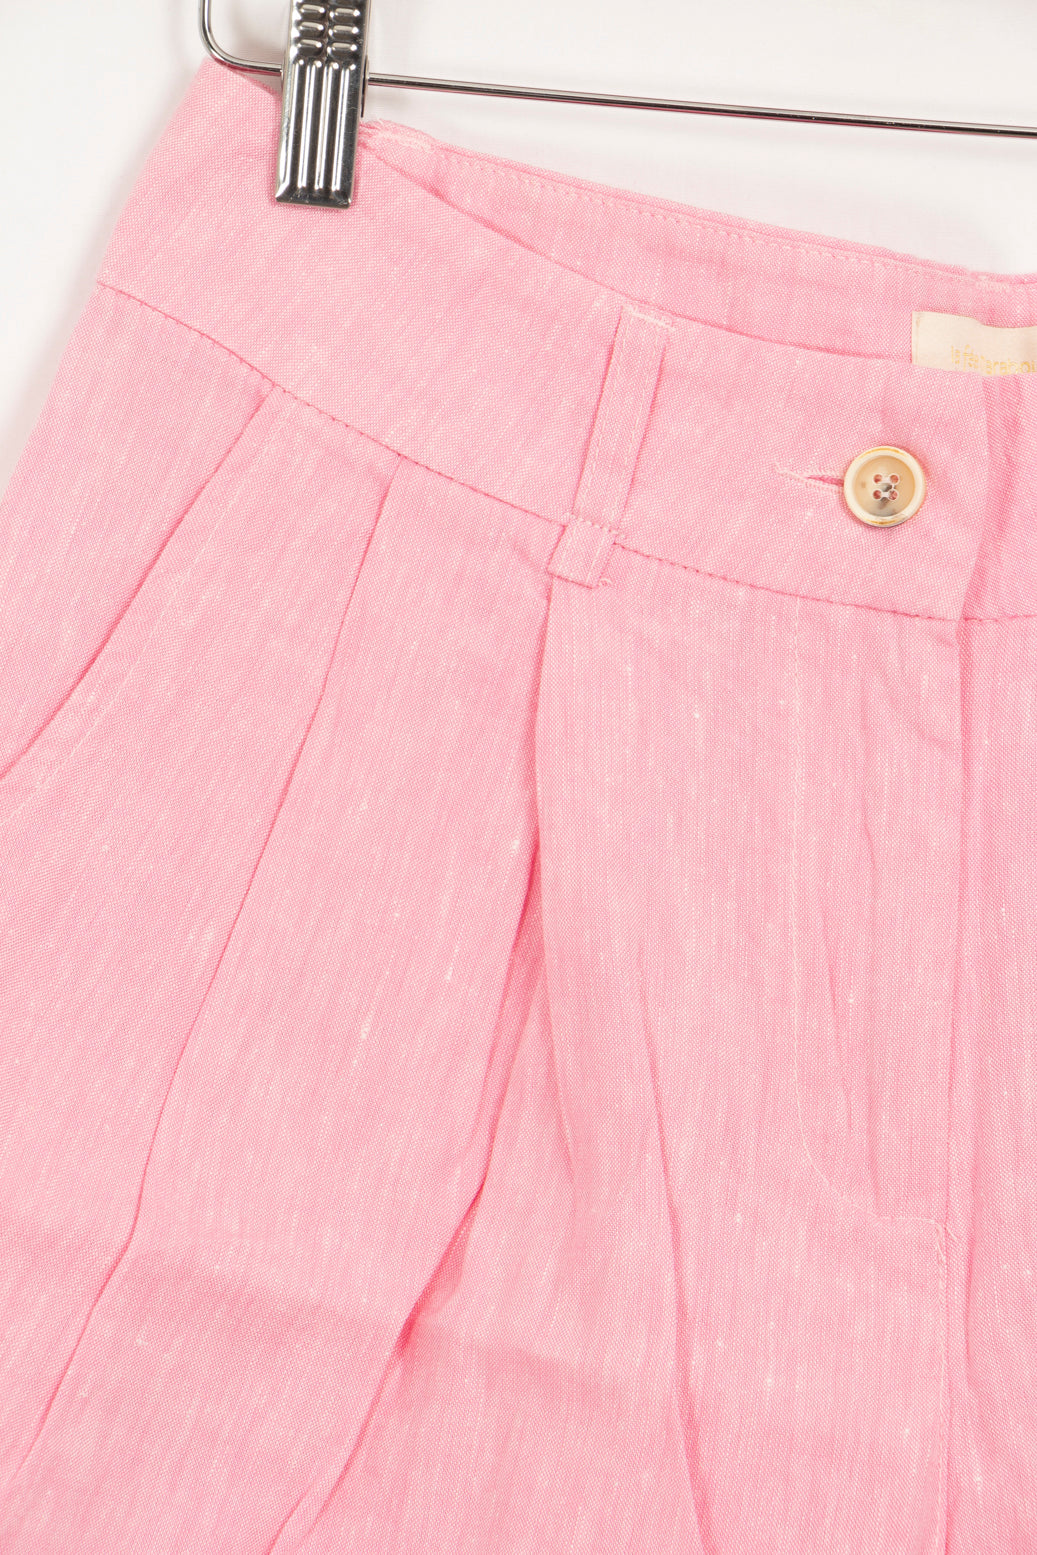 Pink shorts - 38